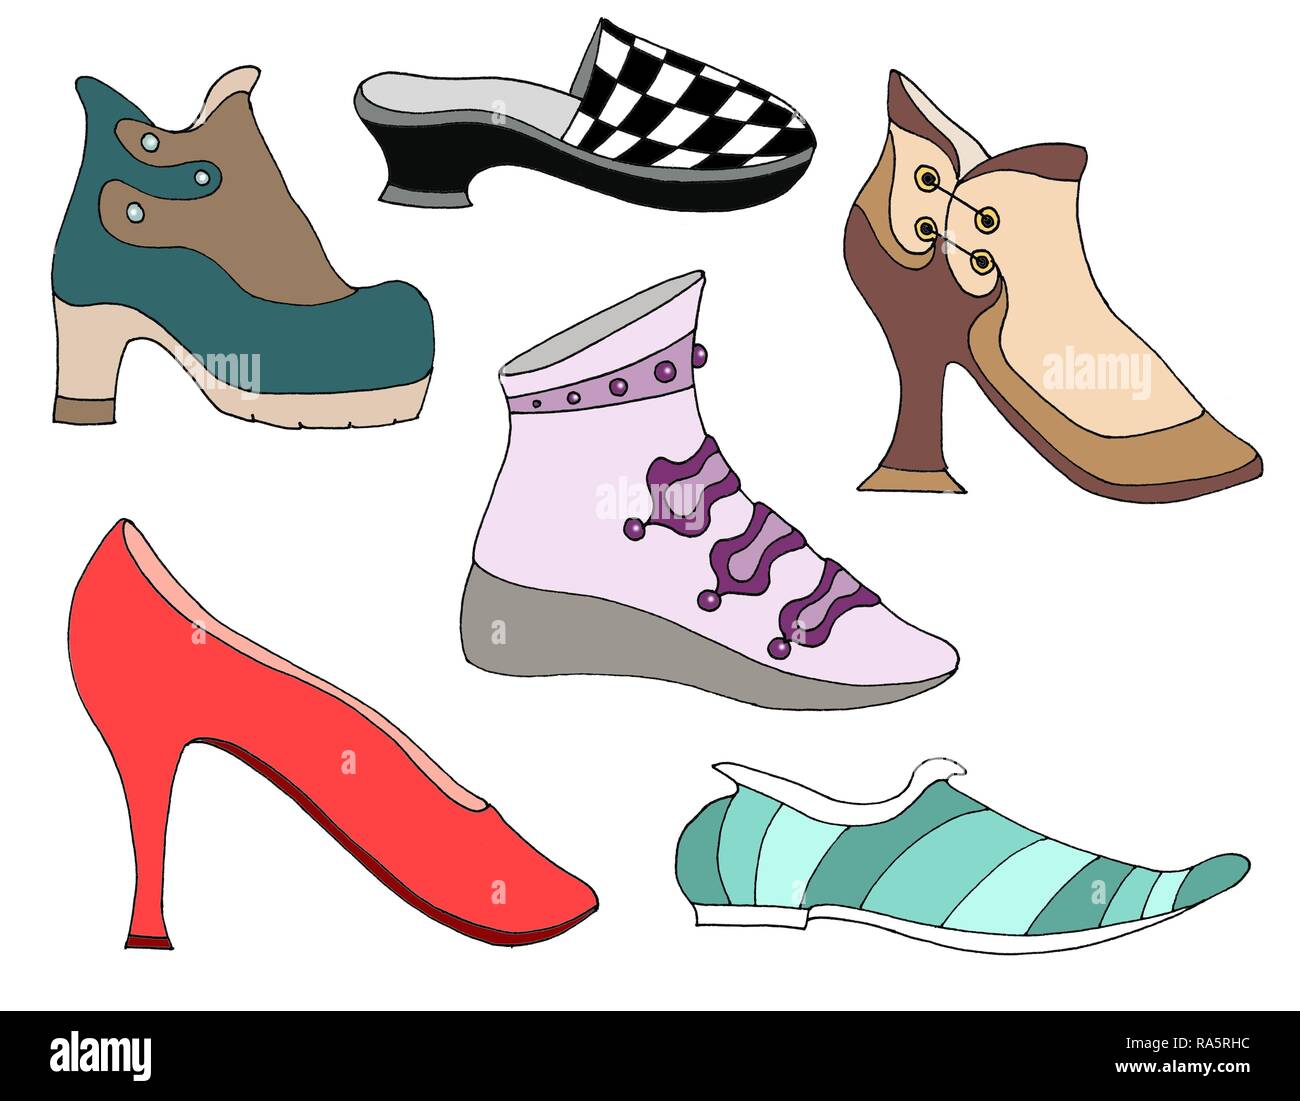 Diverses chaussures, chaussons, pompes, de hauts talons, chaussons, chaussures, tondeuses, Allemagne Banque D'Images